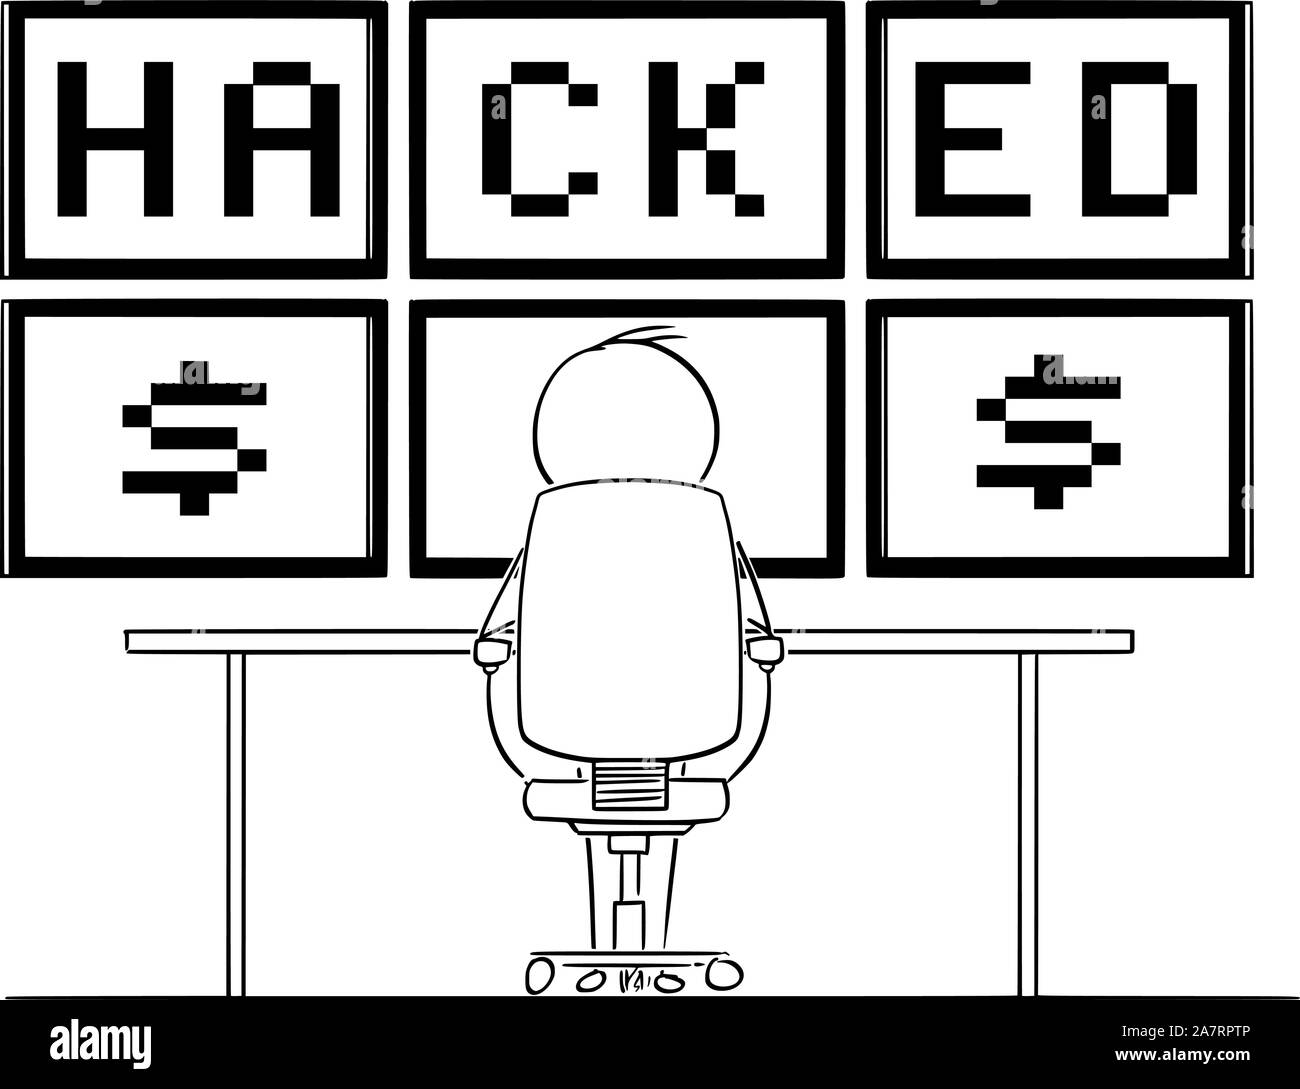 Vektor cartoon Strichmännchen Zeichnen konzeptionelle Darstellung der Mann oder Geschäftsmann vor sechs Computer Monitore in der Wand sitzen, und beobachten Sie die gehackten Text. Konzept der digitalen Kriminalität. Stock Vektor